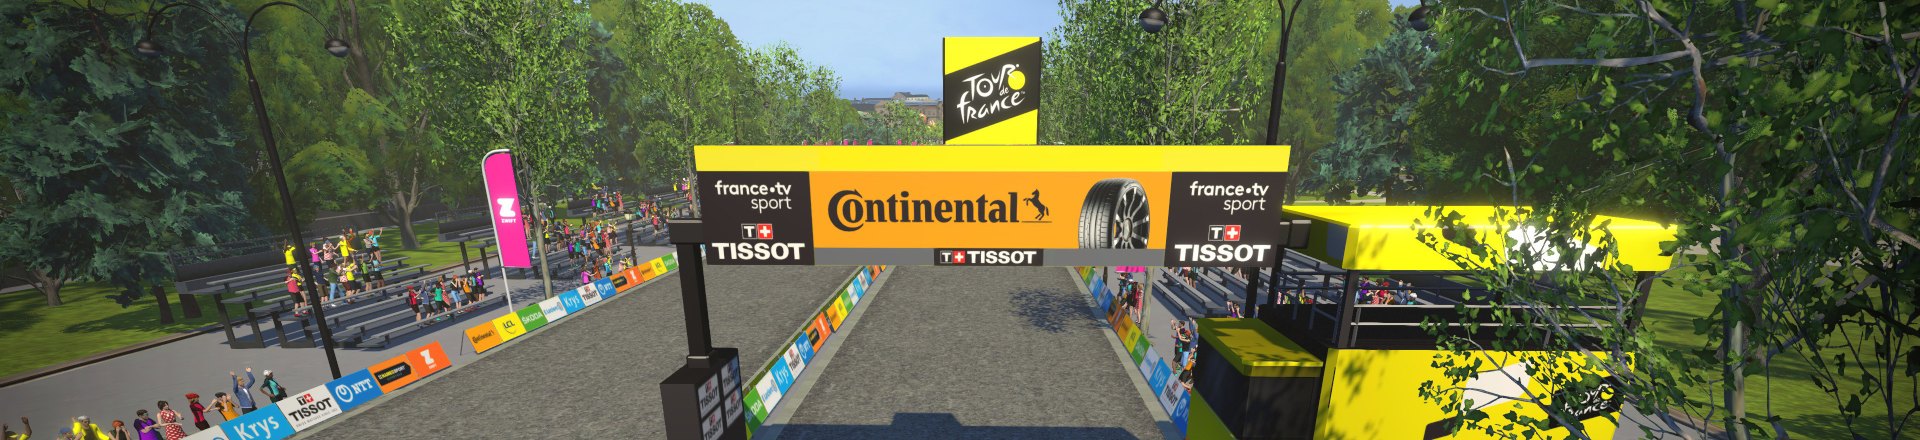 Virtual finish line for the Tour de France